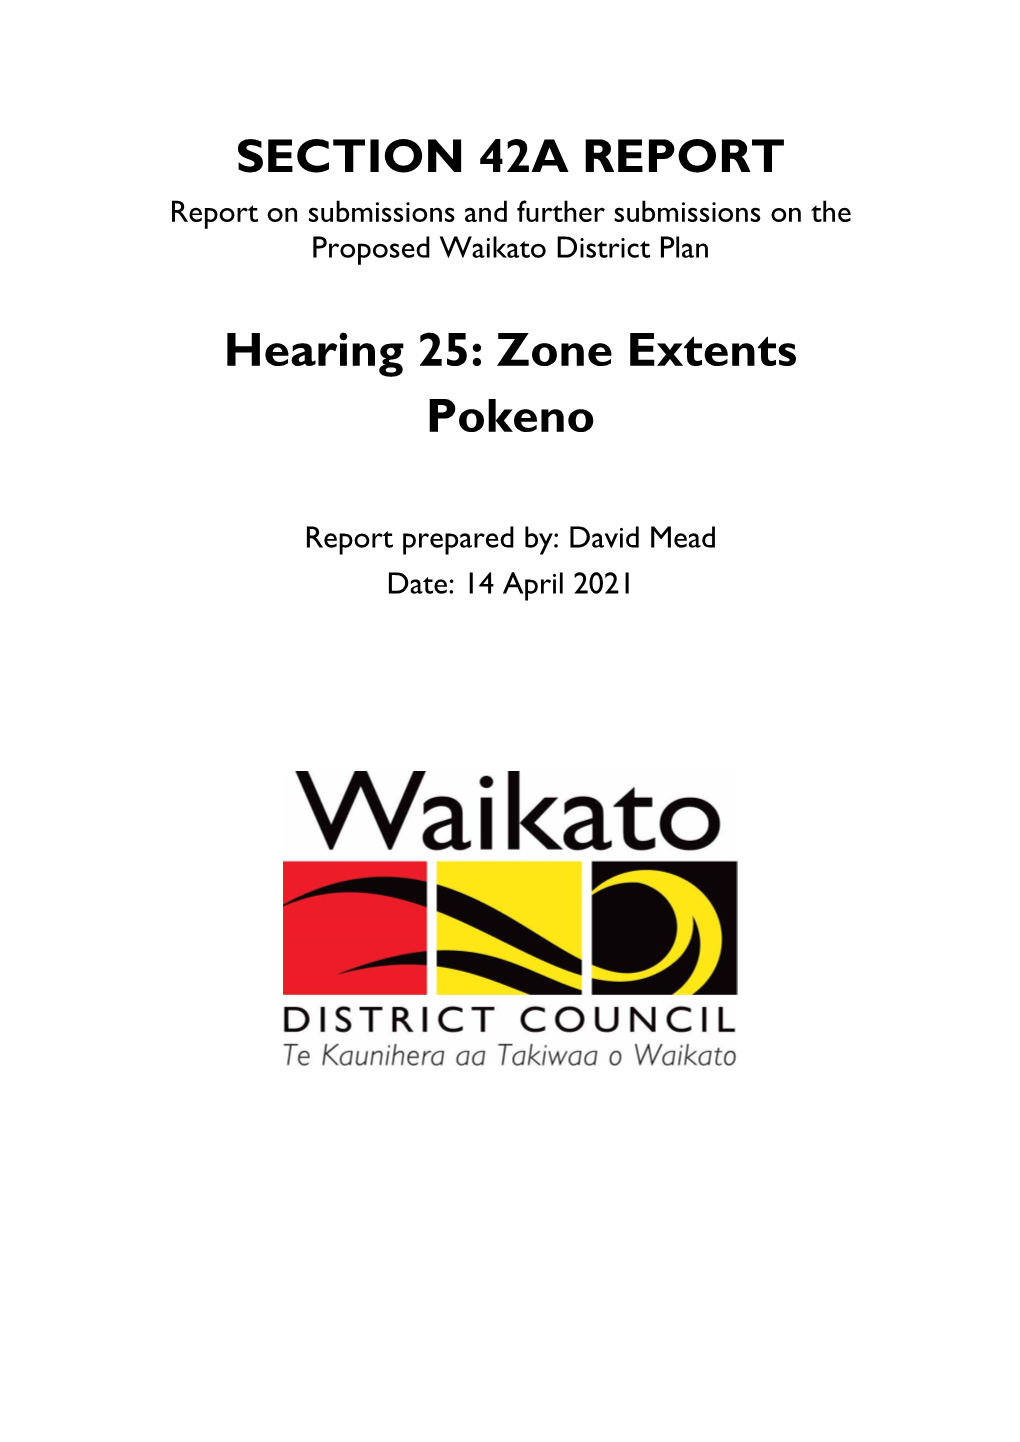 Zone Extents Pokeno